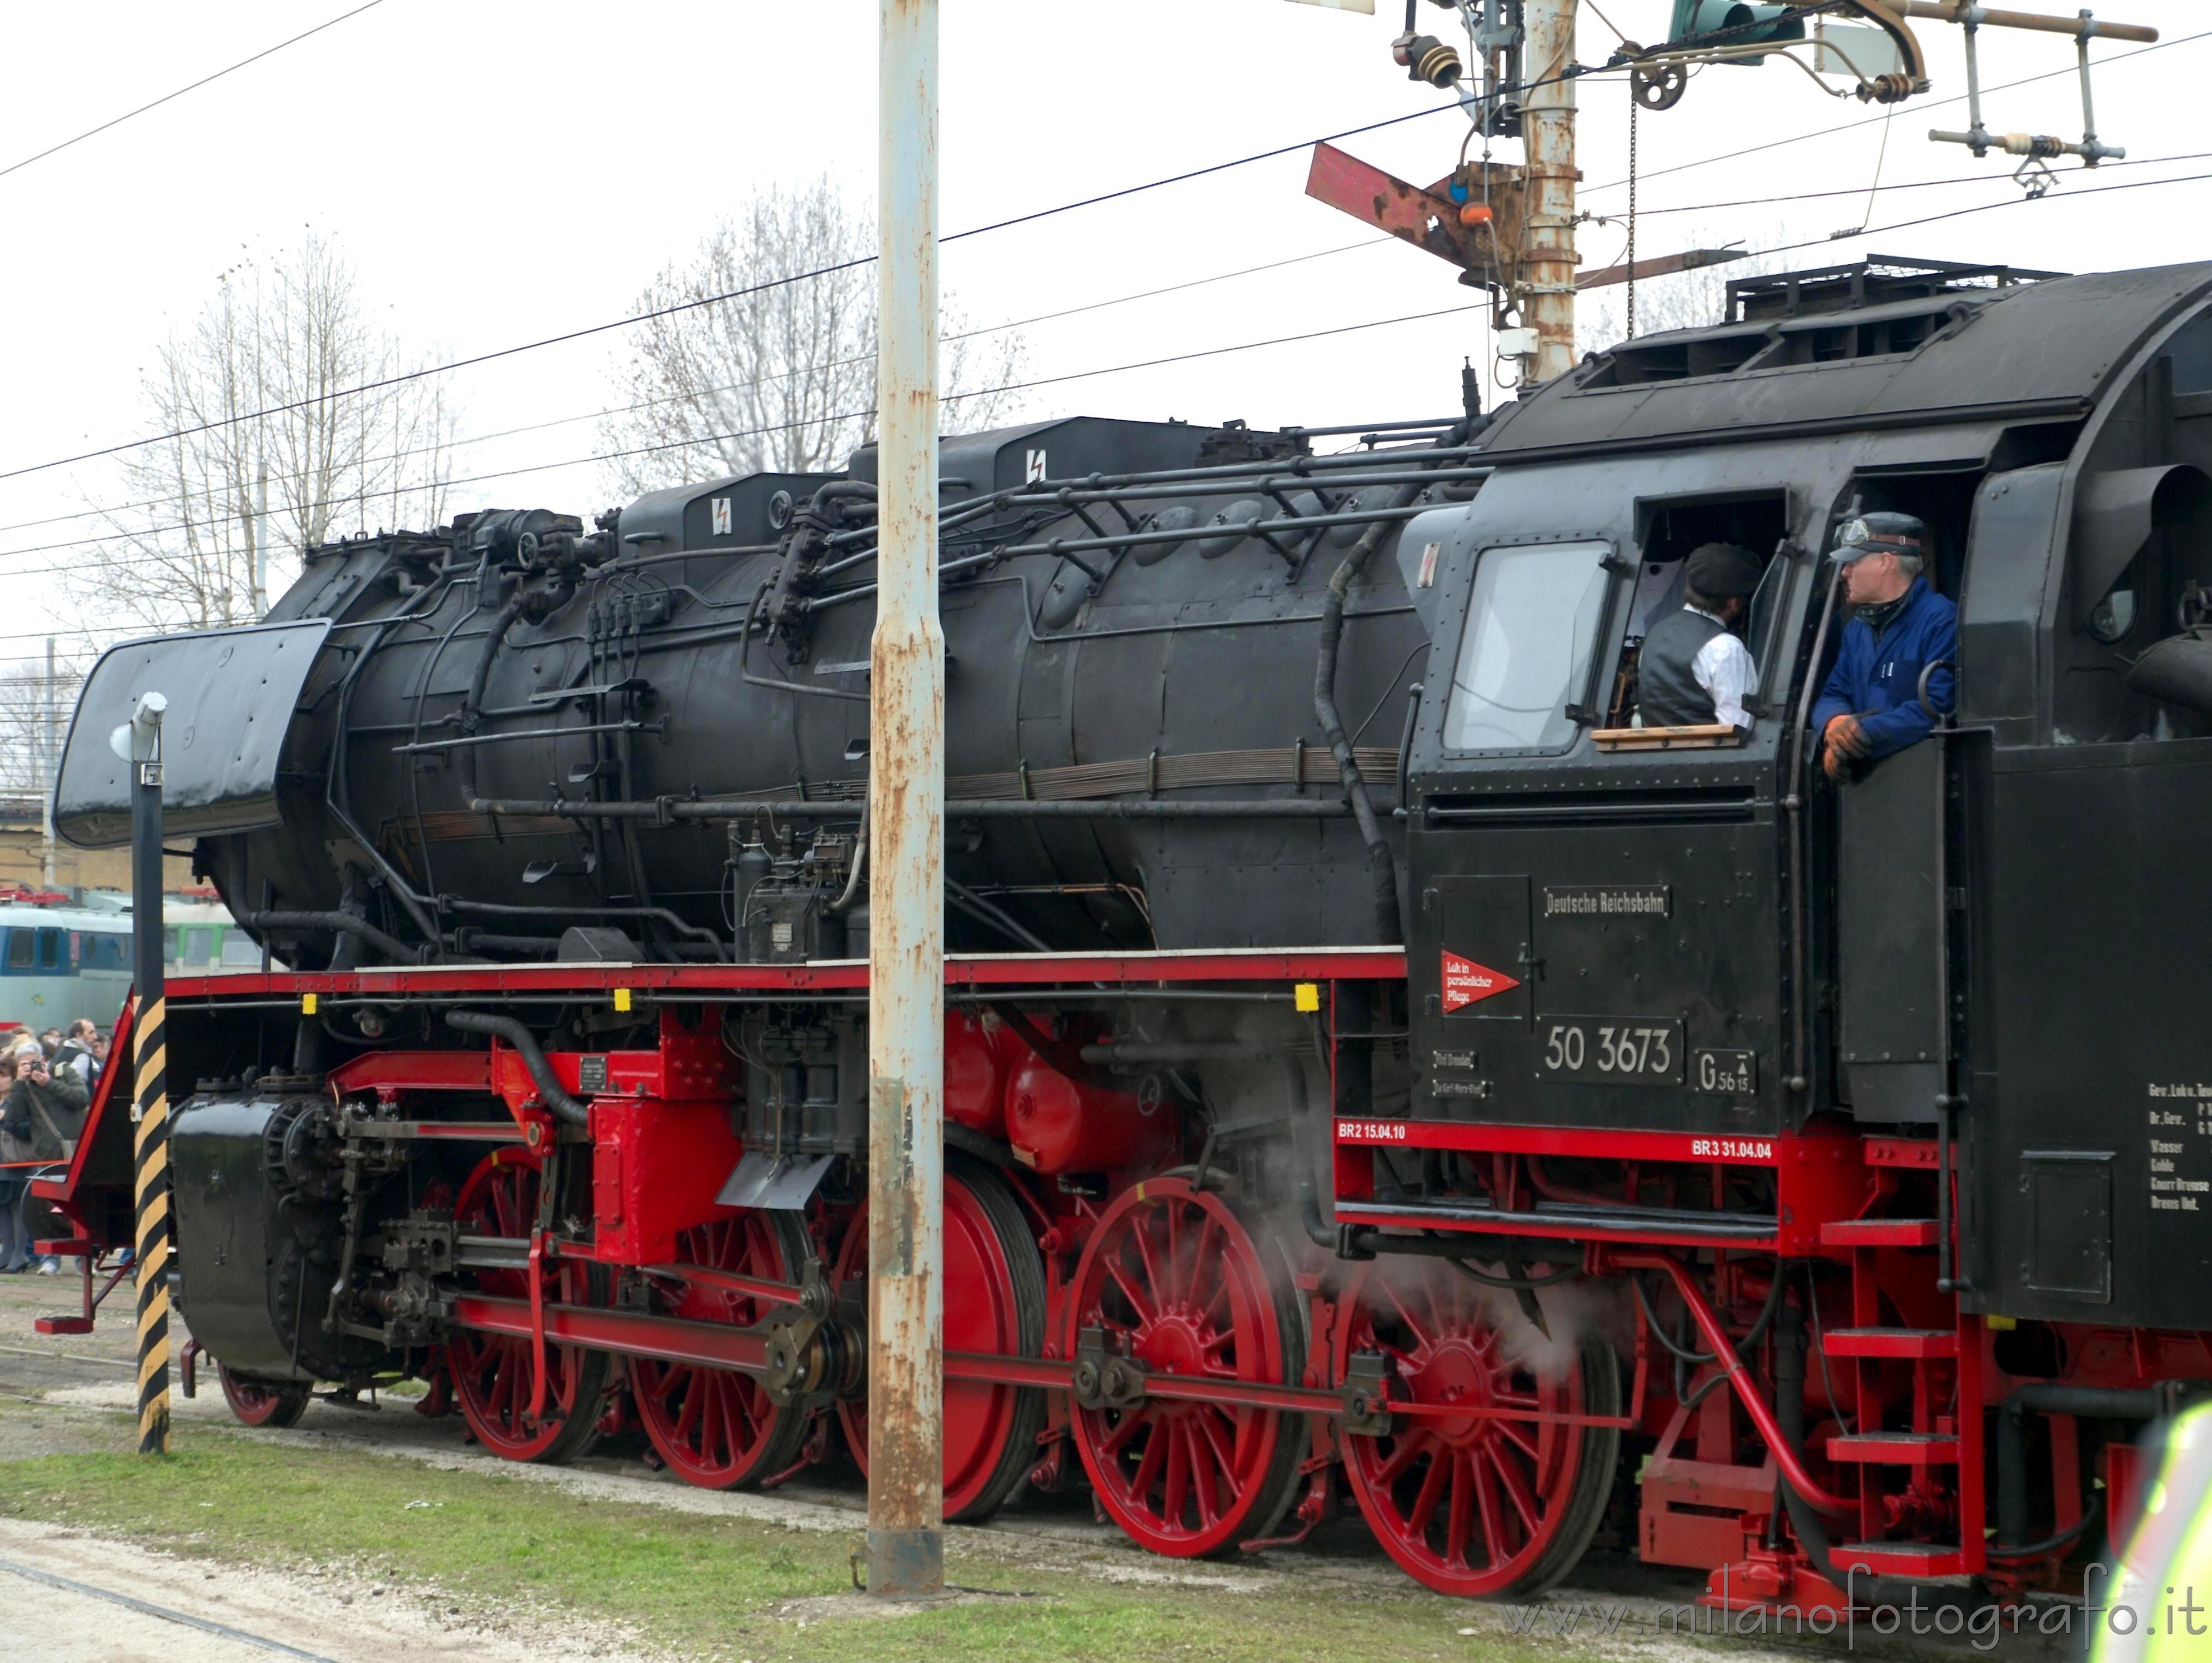 Milan (Italy): Large steam locomotive - Milan (Italy)